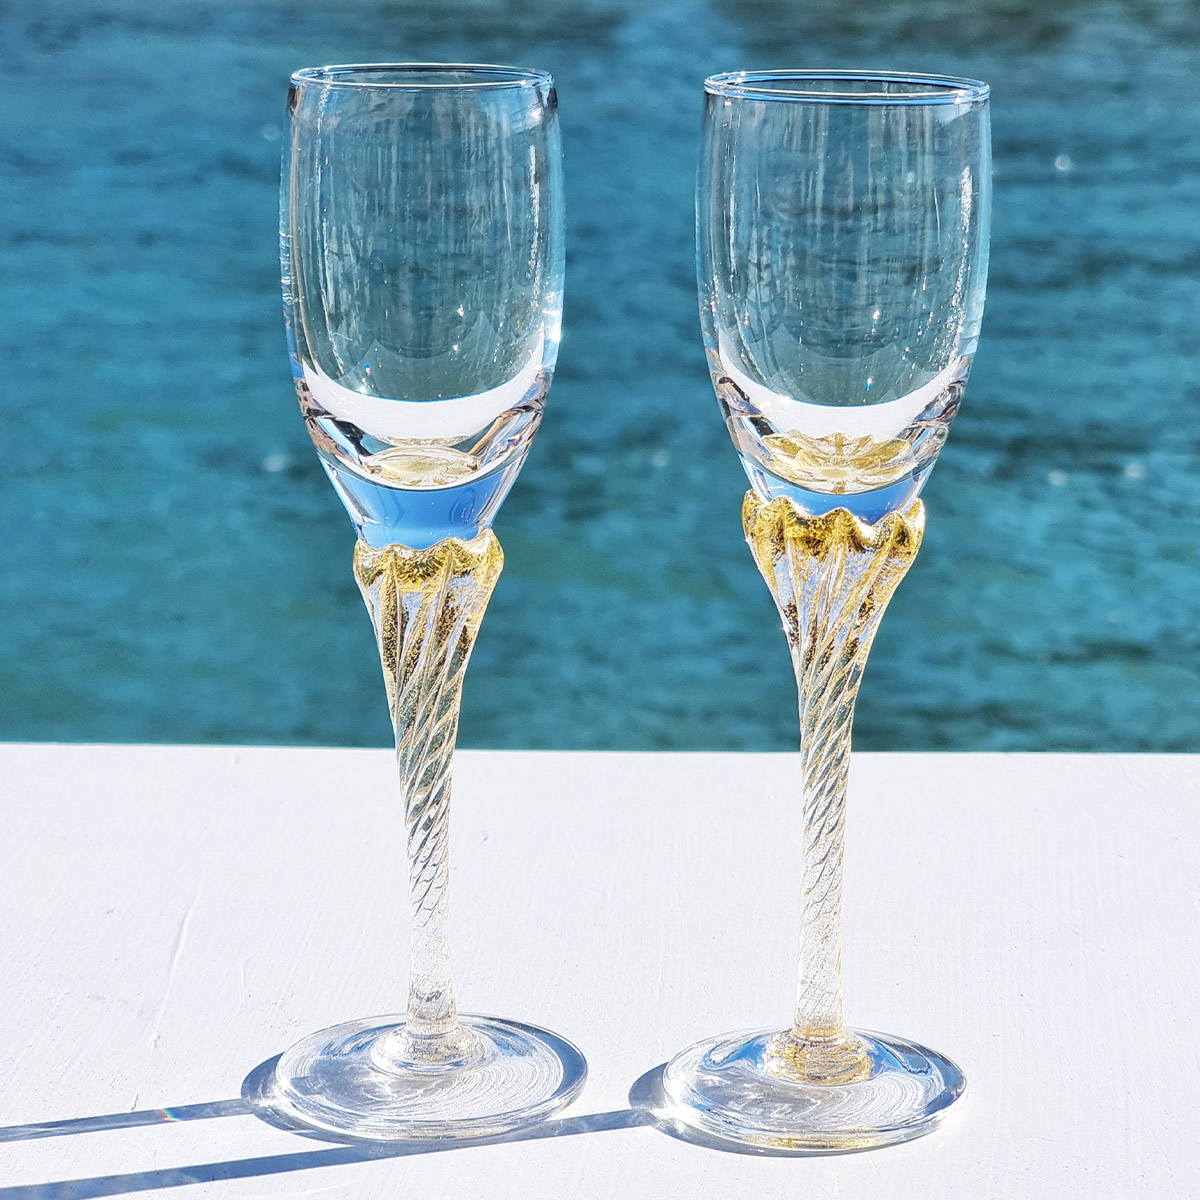 Bicchieri da Vino e Flute Collezione: Bicchieri Cristallo - Flute